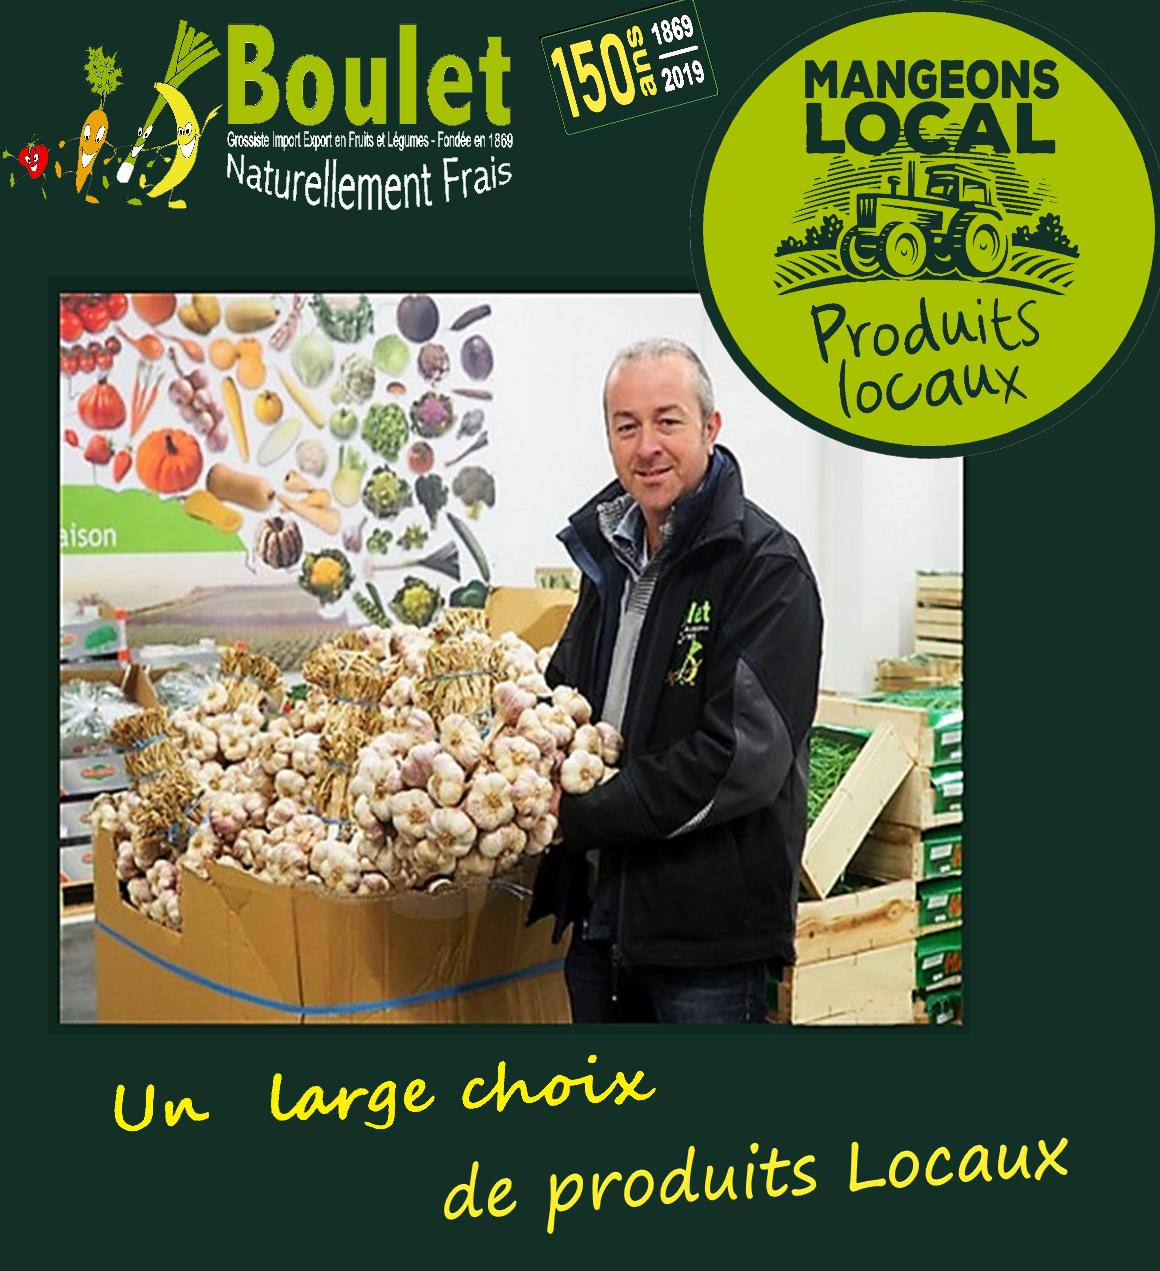 BOULET F&L MANGEONS LOCAL PRODUITS LOCAUX & LAURENT CAROUSSEL